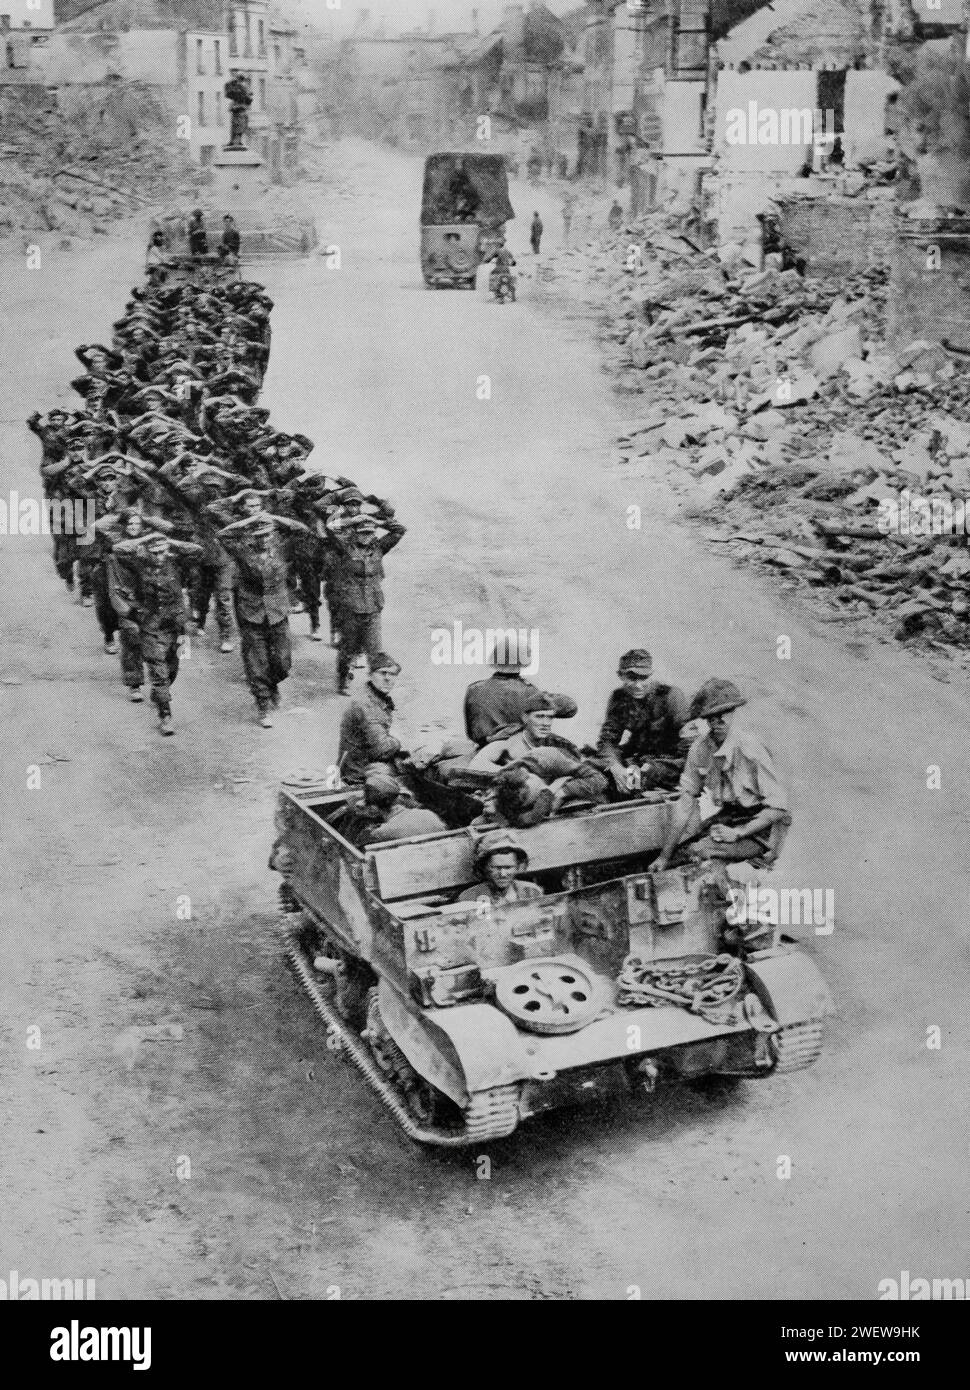 Deutsche Gefangene, die von Truppen begleitet werden, durchqueren Mitte August 1944 die Ruinen einer Stadt in der Normandie, während des Zweiten Weltkriegs nach der Invasion der Alliierten in Europa am D-Day am 6. Juni 1944. Stockfoto